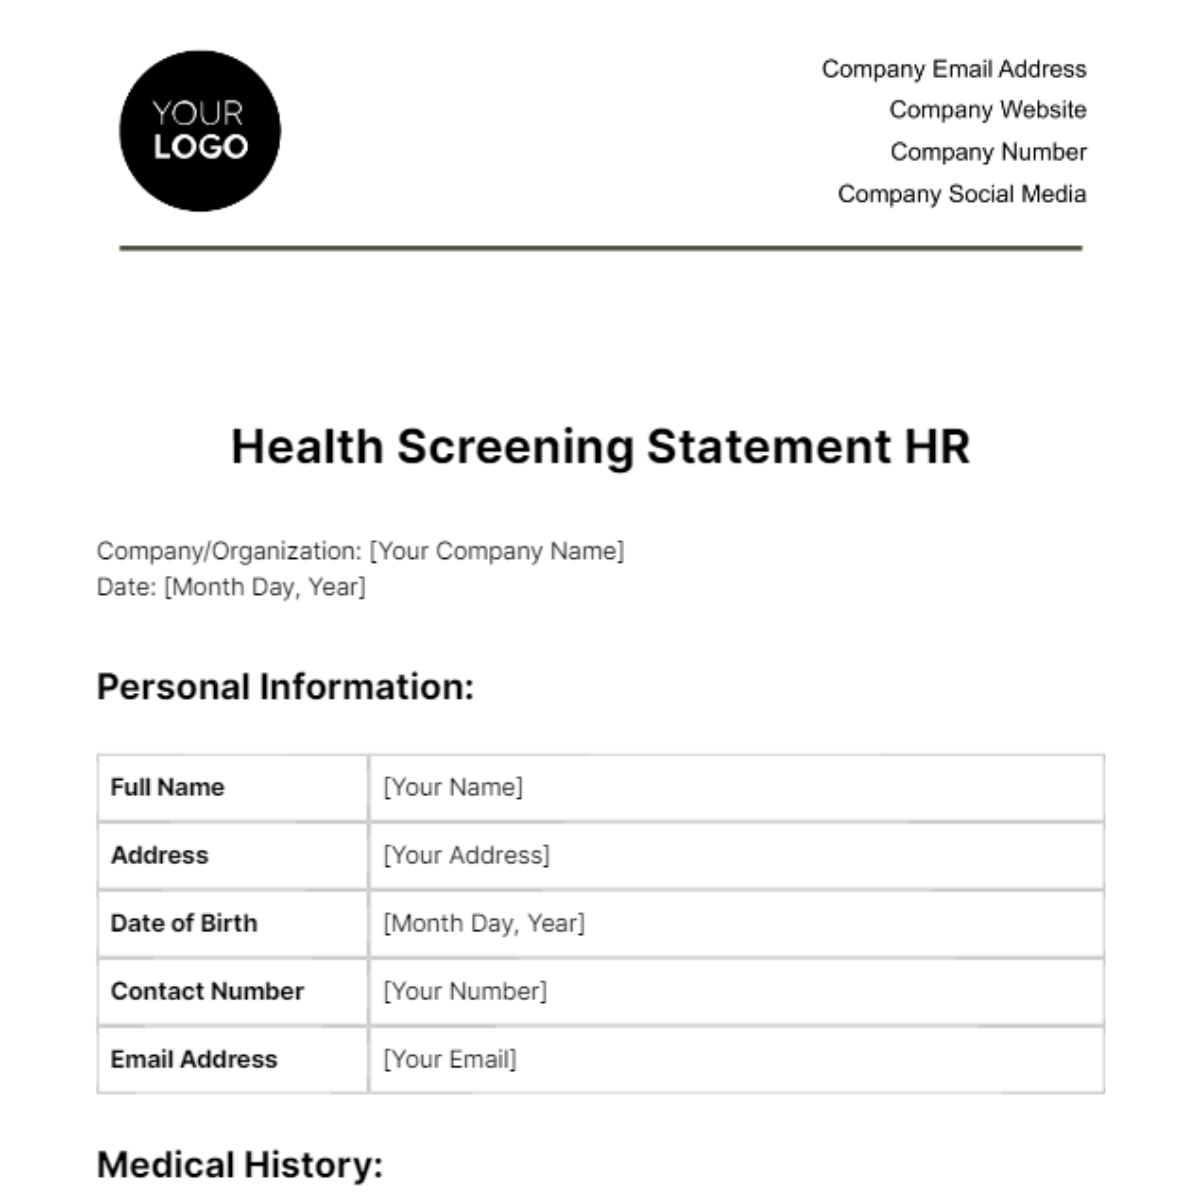 Health Screening Statement HR Template